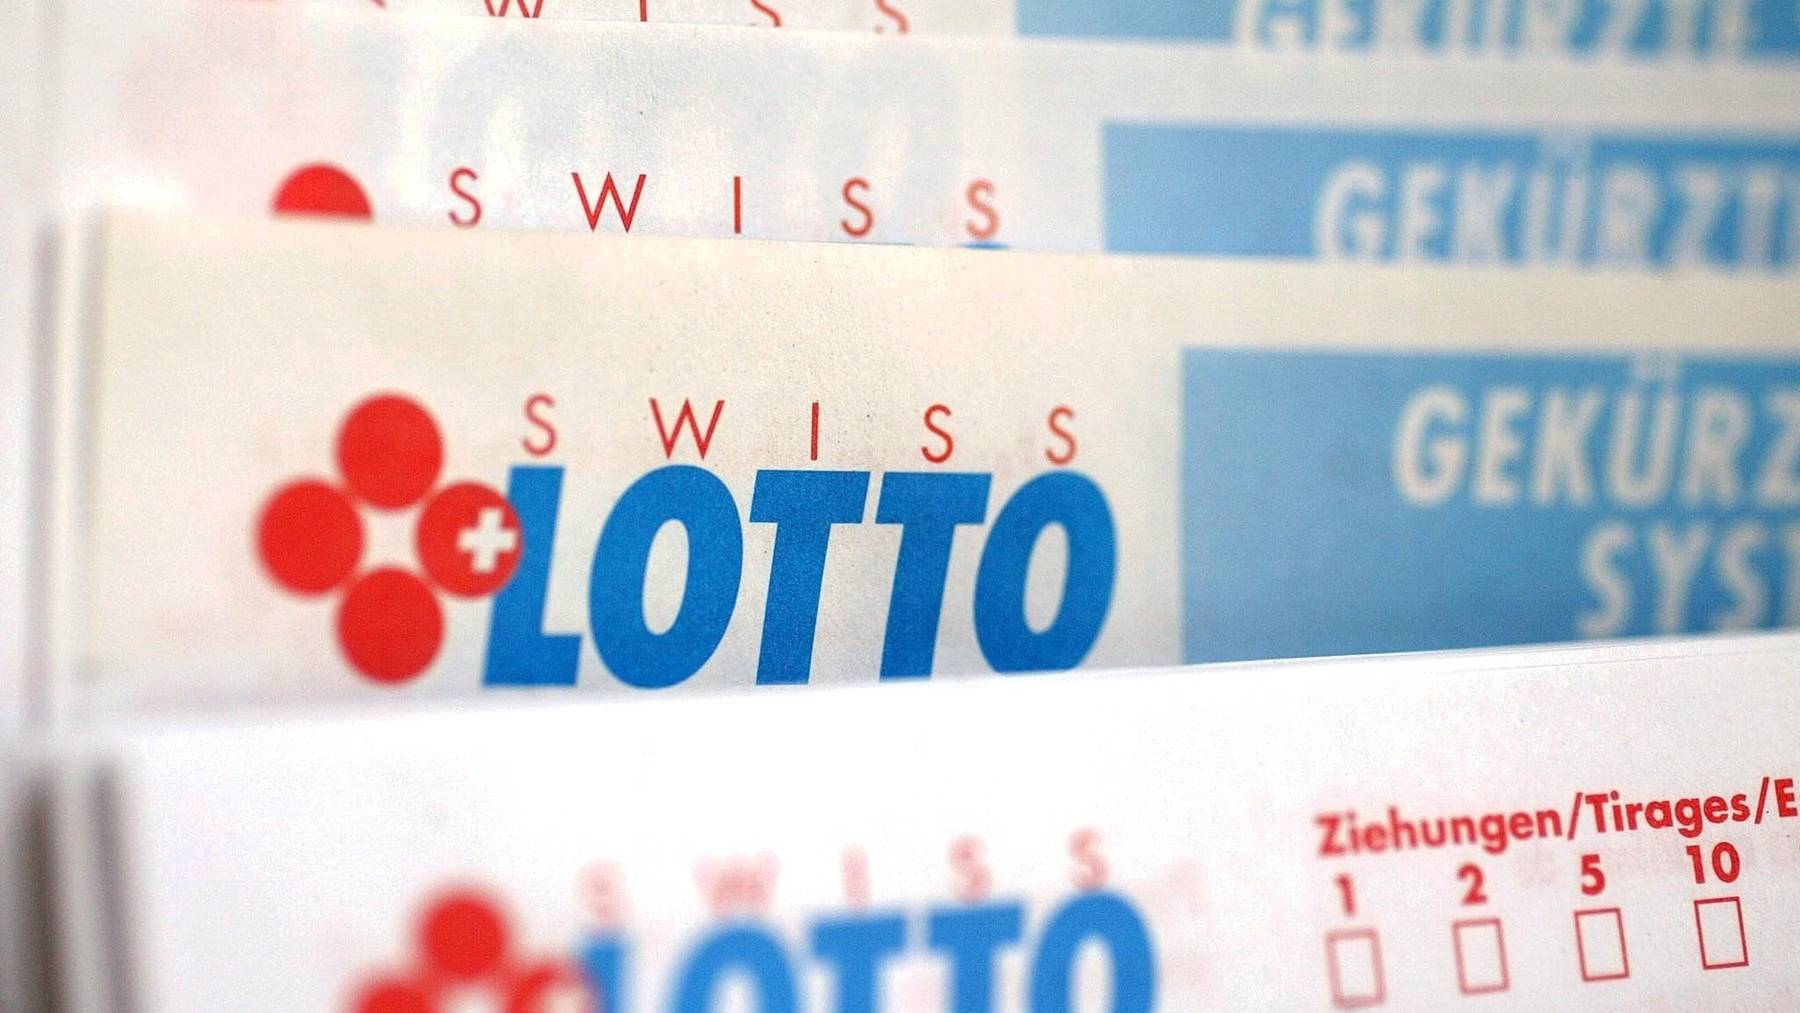 Der zweithöchste Gewinn im Schweizer Zahlenlotto beläuft sich auf 46 Millionen Franken. (Symbolbild)